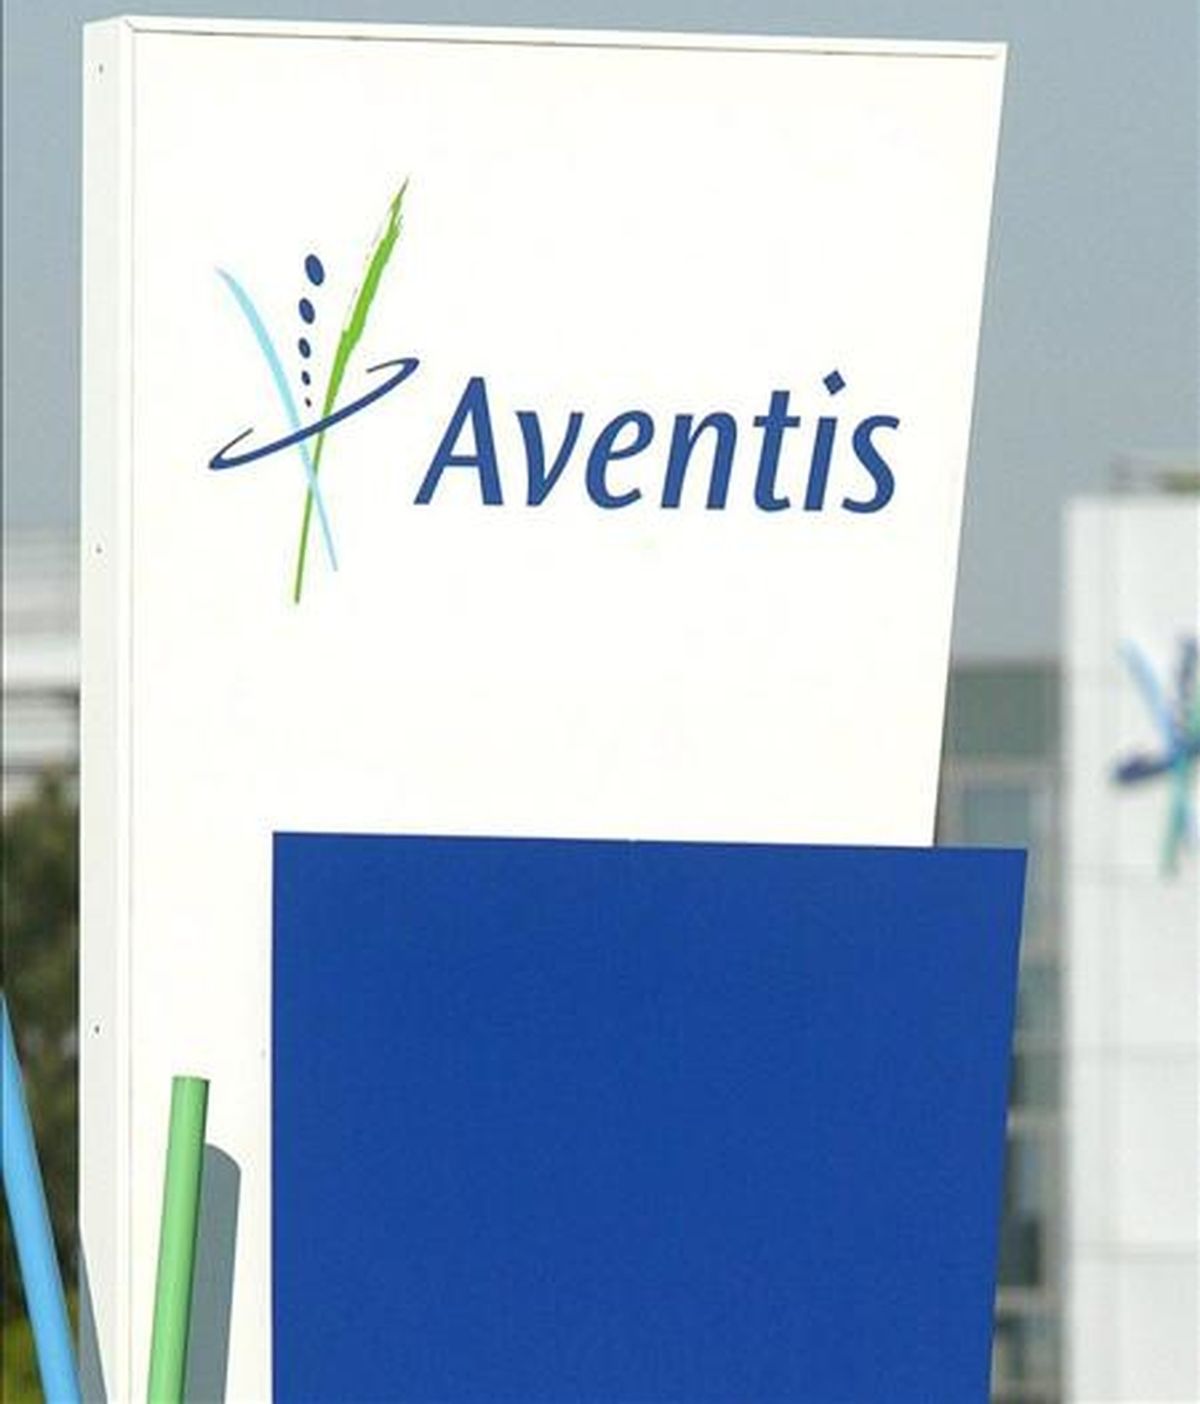 El gigante farmacéutico francés Sanofi Aventis anunció hoy la firma de un acuerdo para la compra del líder brasileño de medicamentos genéricos Medley sobre la base de una valoración de 1.500 millones de reales (unos 500 millones de euros). EFE/Archivo